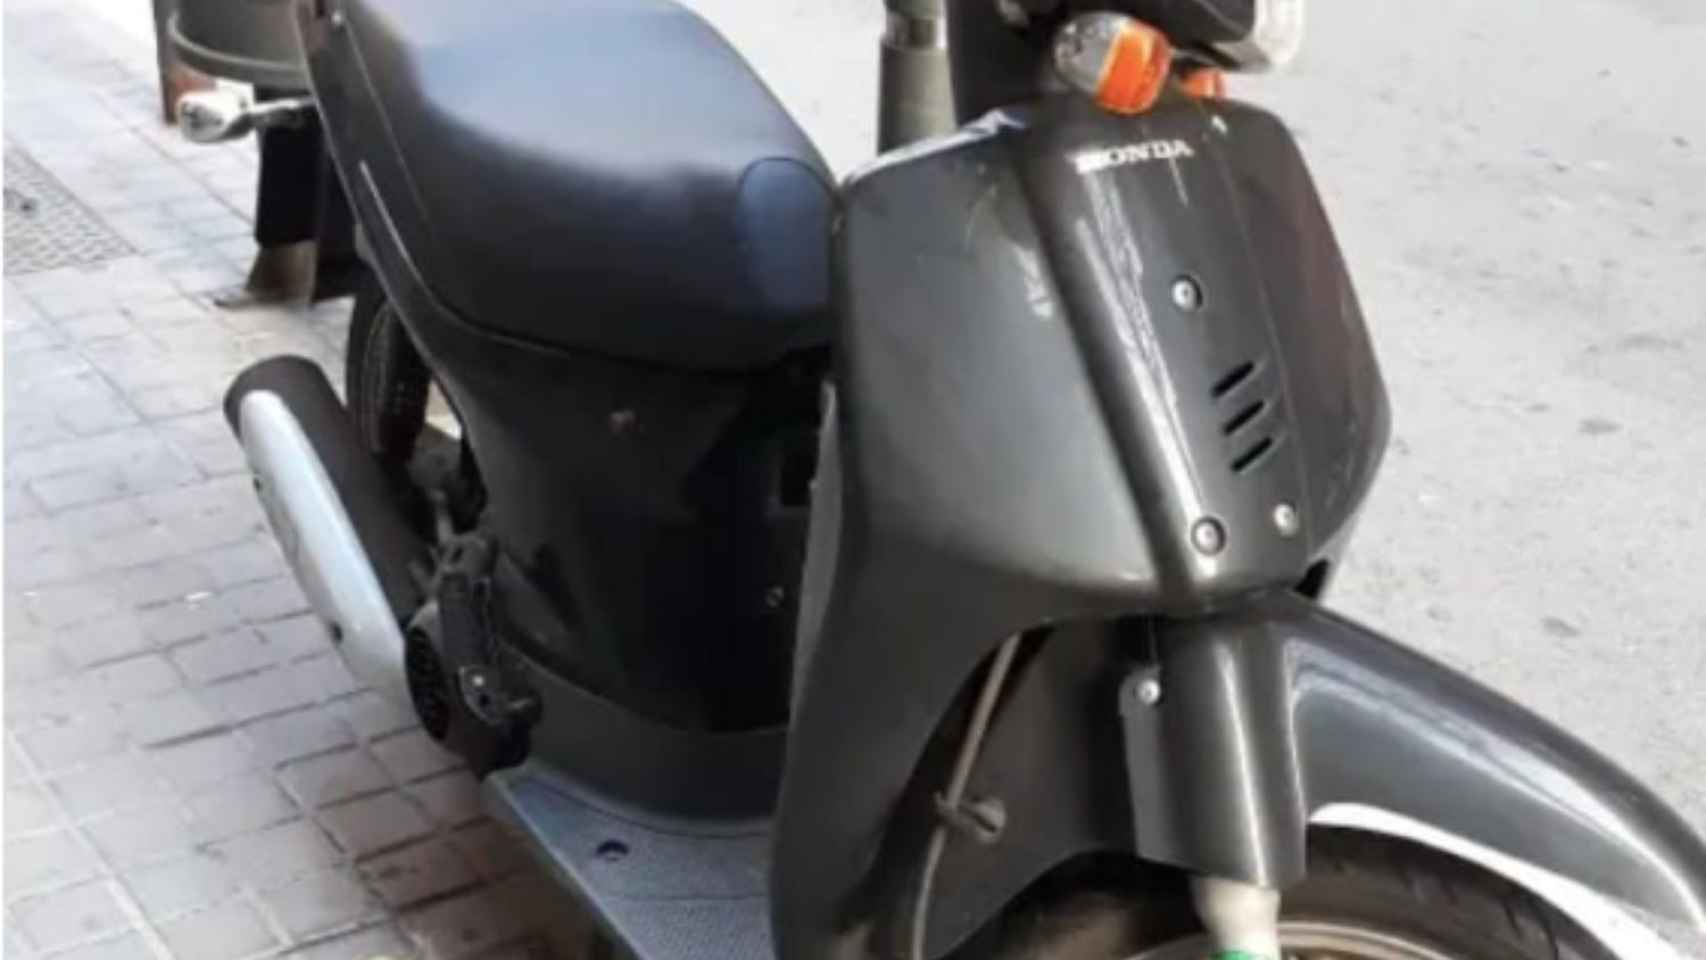 La moto recuperada por la Guardia Urbana de Barcelona / GUARDIA URBANA vía TWITTER